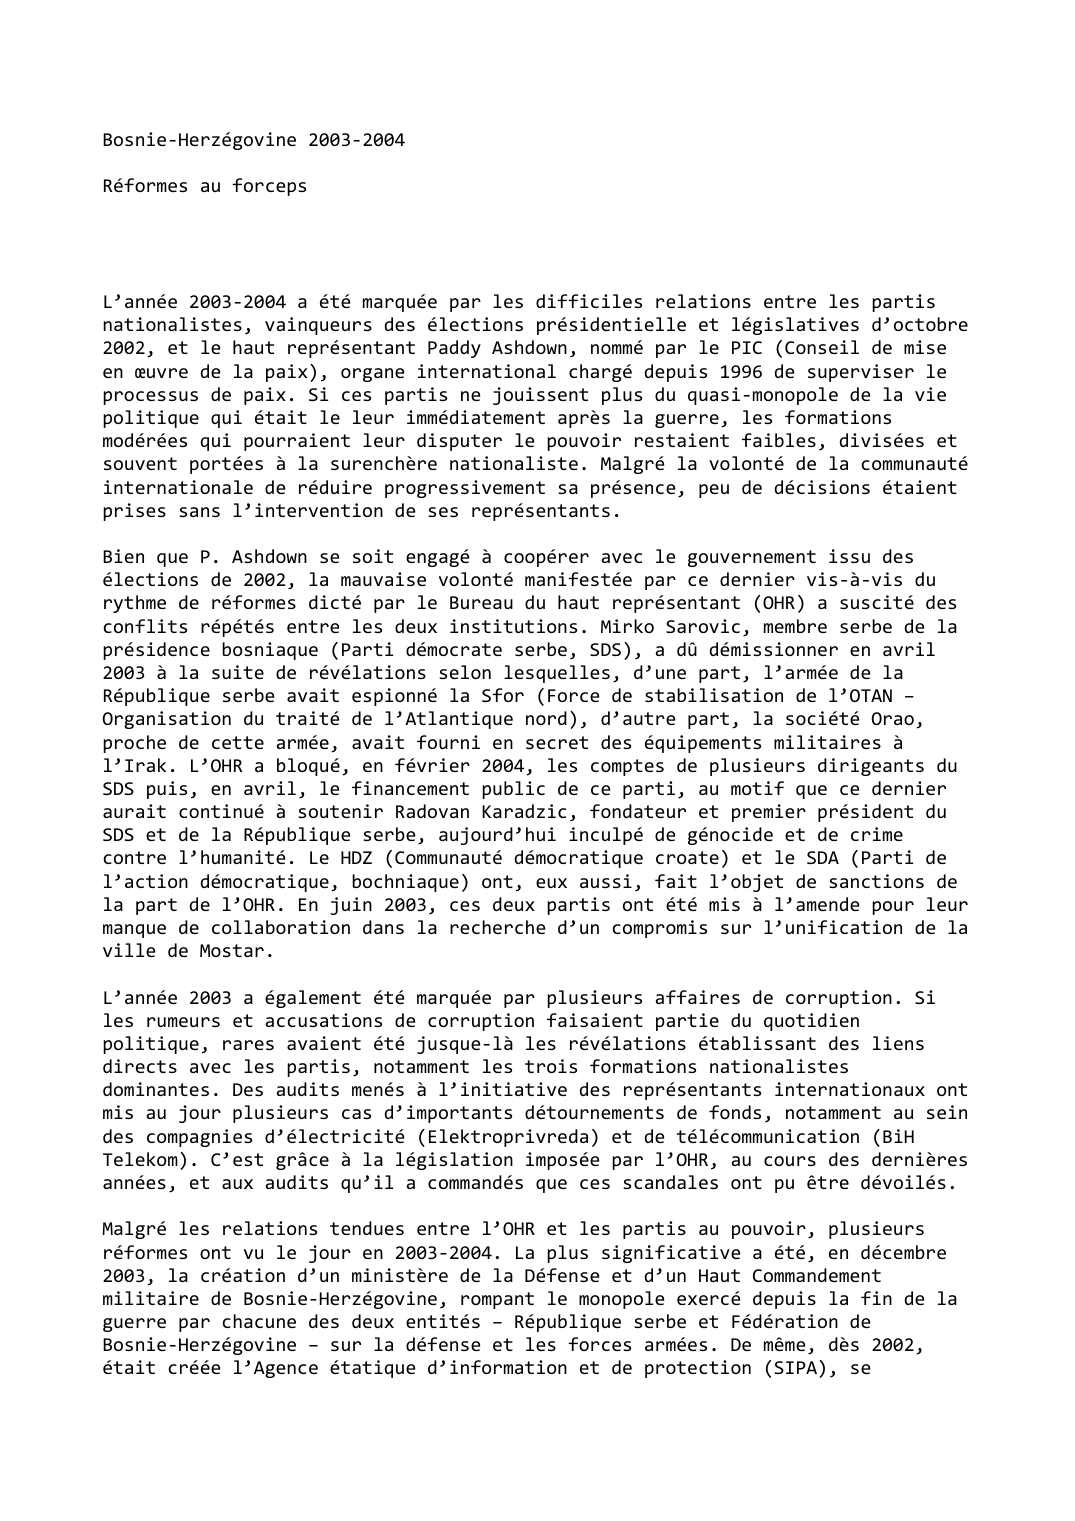 Prévisualisation du document Bosnie-Herzégovine (2003-2004): Réformes au forceps